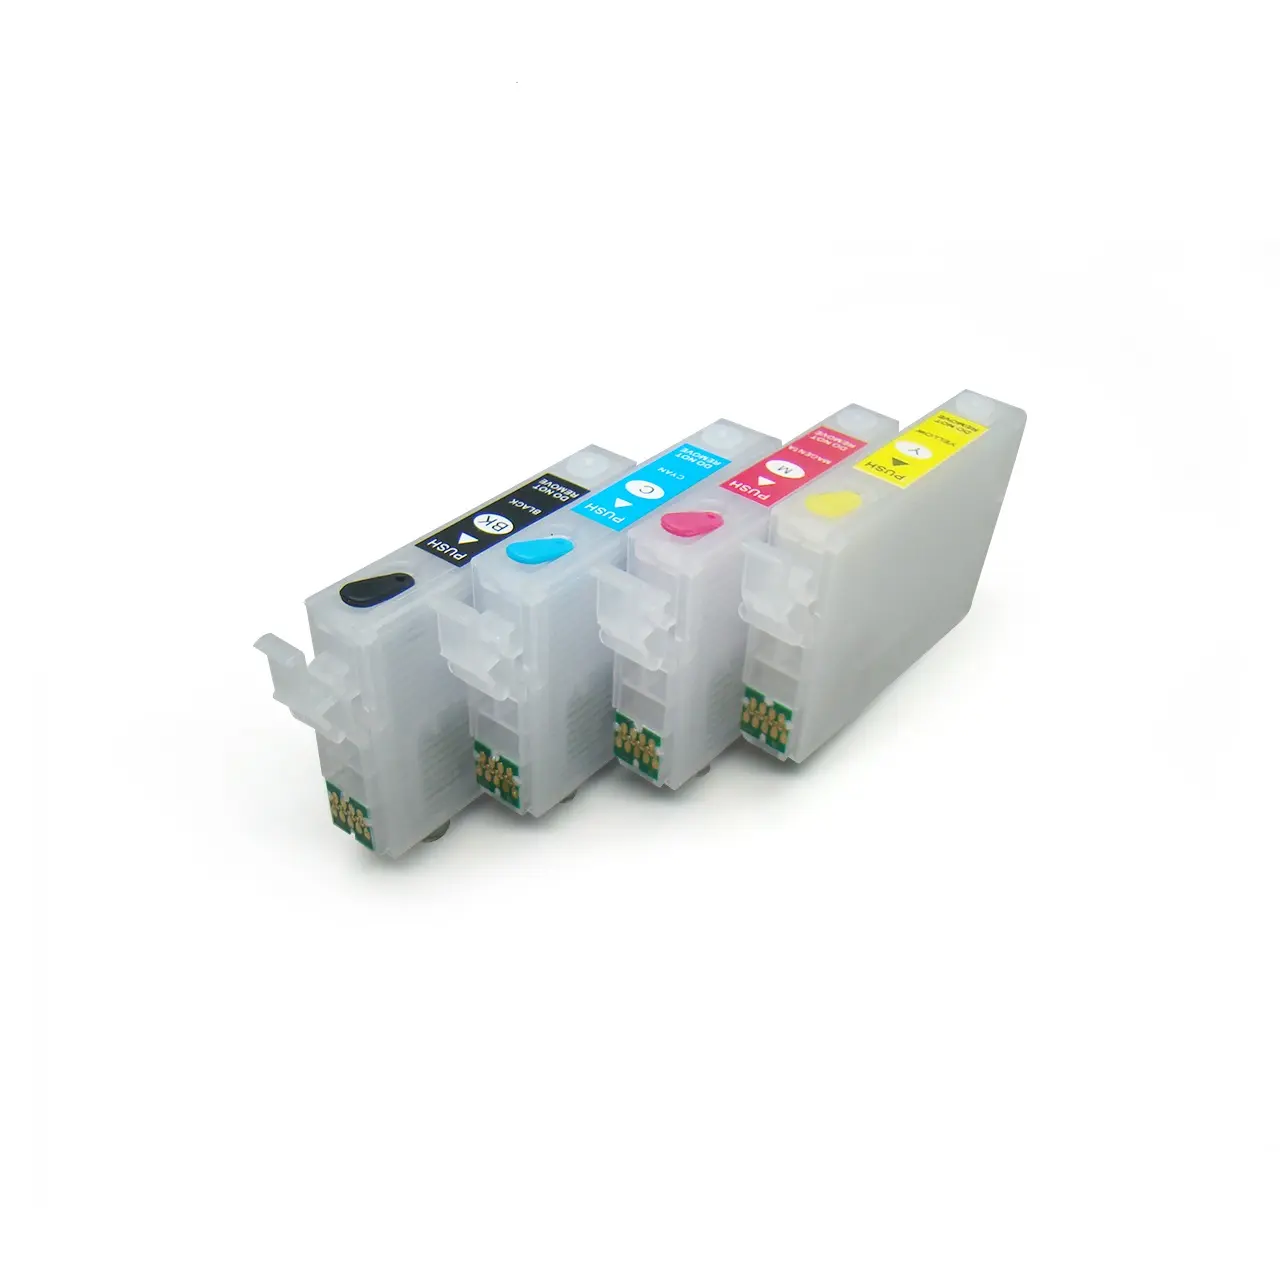 Per cartucce ricaricabili vuote Epson 503 con chip una tantum per stampante Expression Home XP-5200